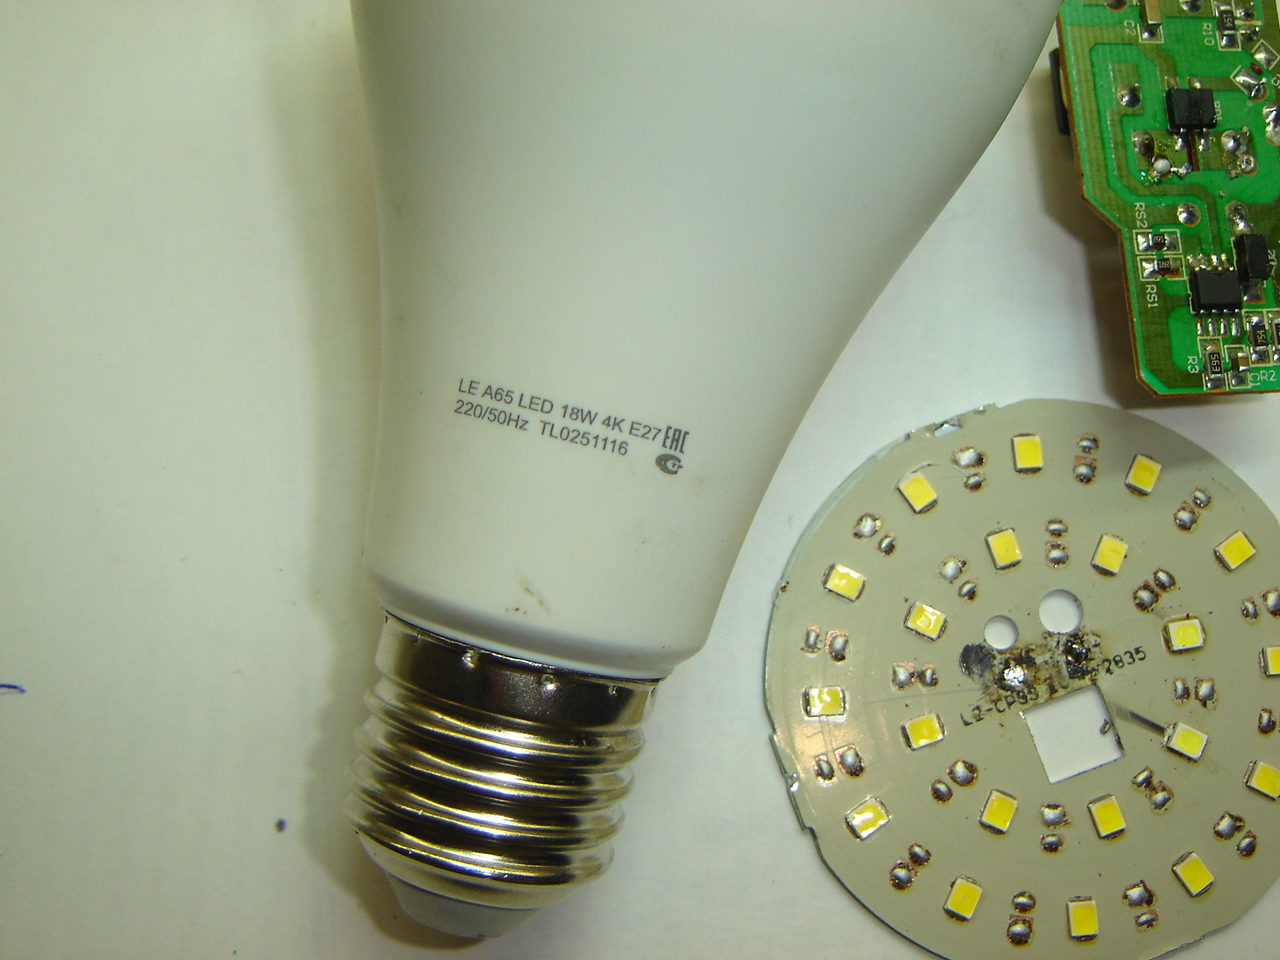 Как отремонтировать светодиодную лампочку на 220 В